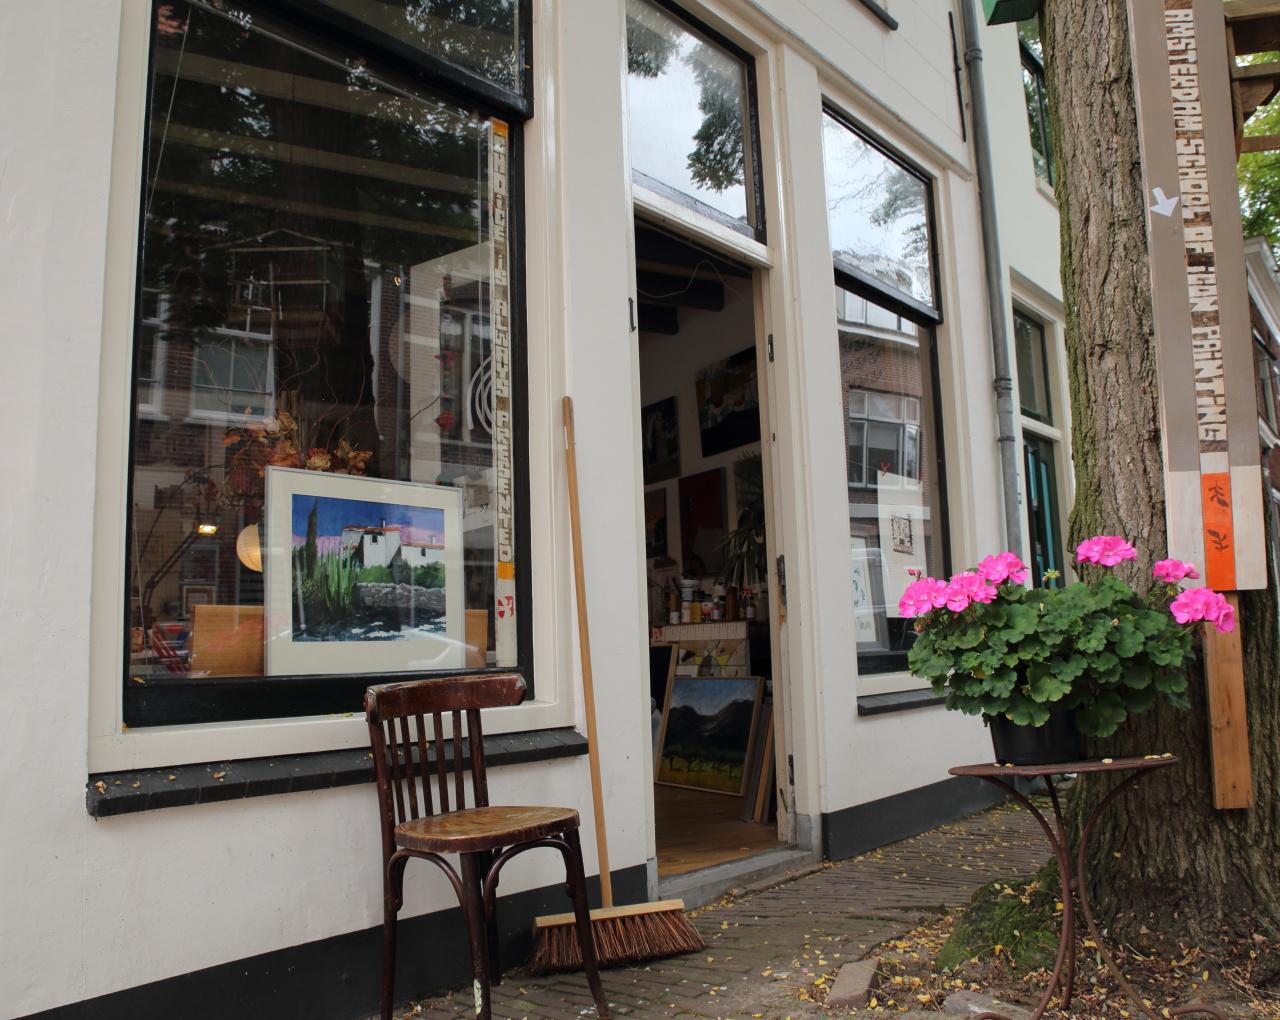 Foto Atelier Ruud Jansen in Haarlem, Einkaufen, Whonen & kochen - #1